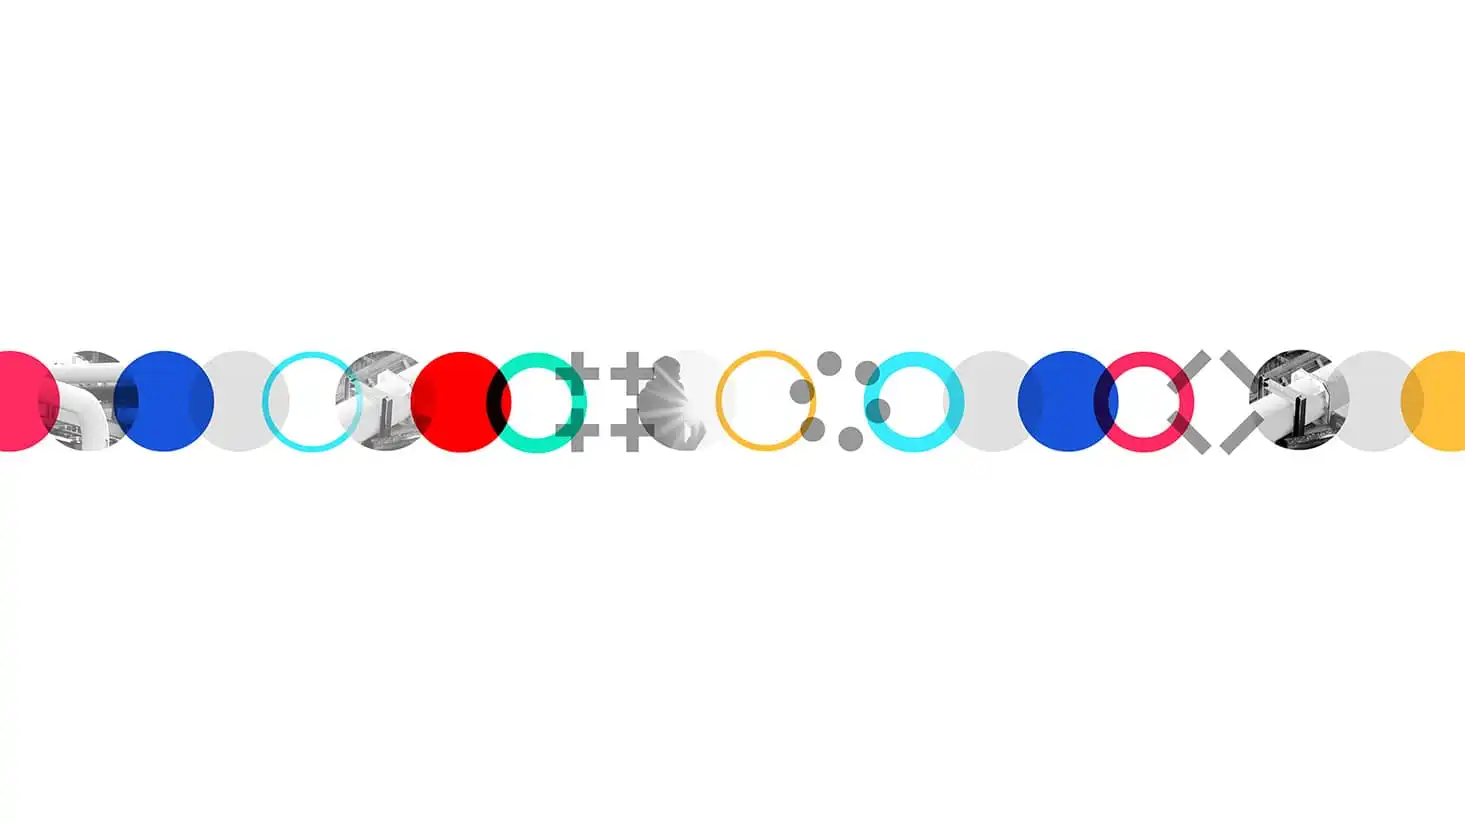 the AIT-Stein Chain, a global logo concept